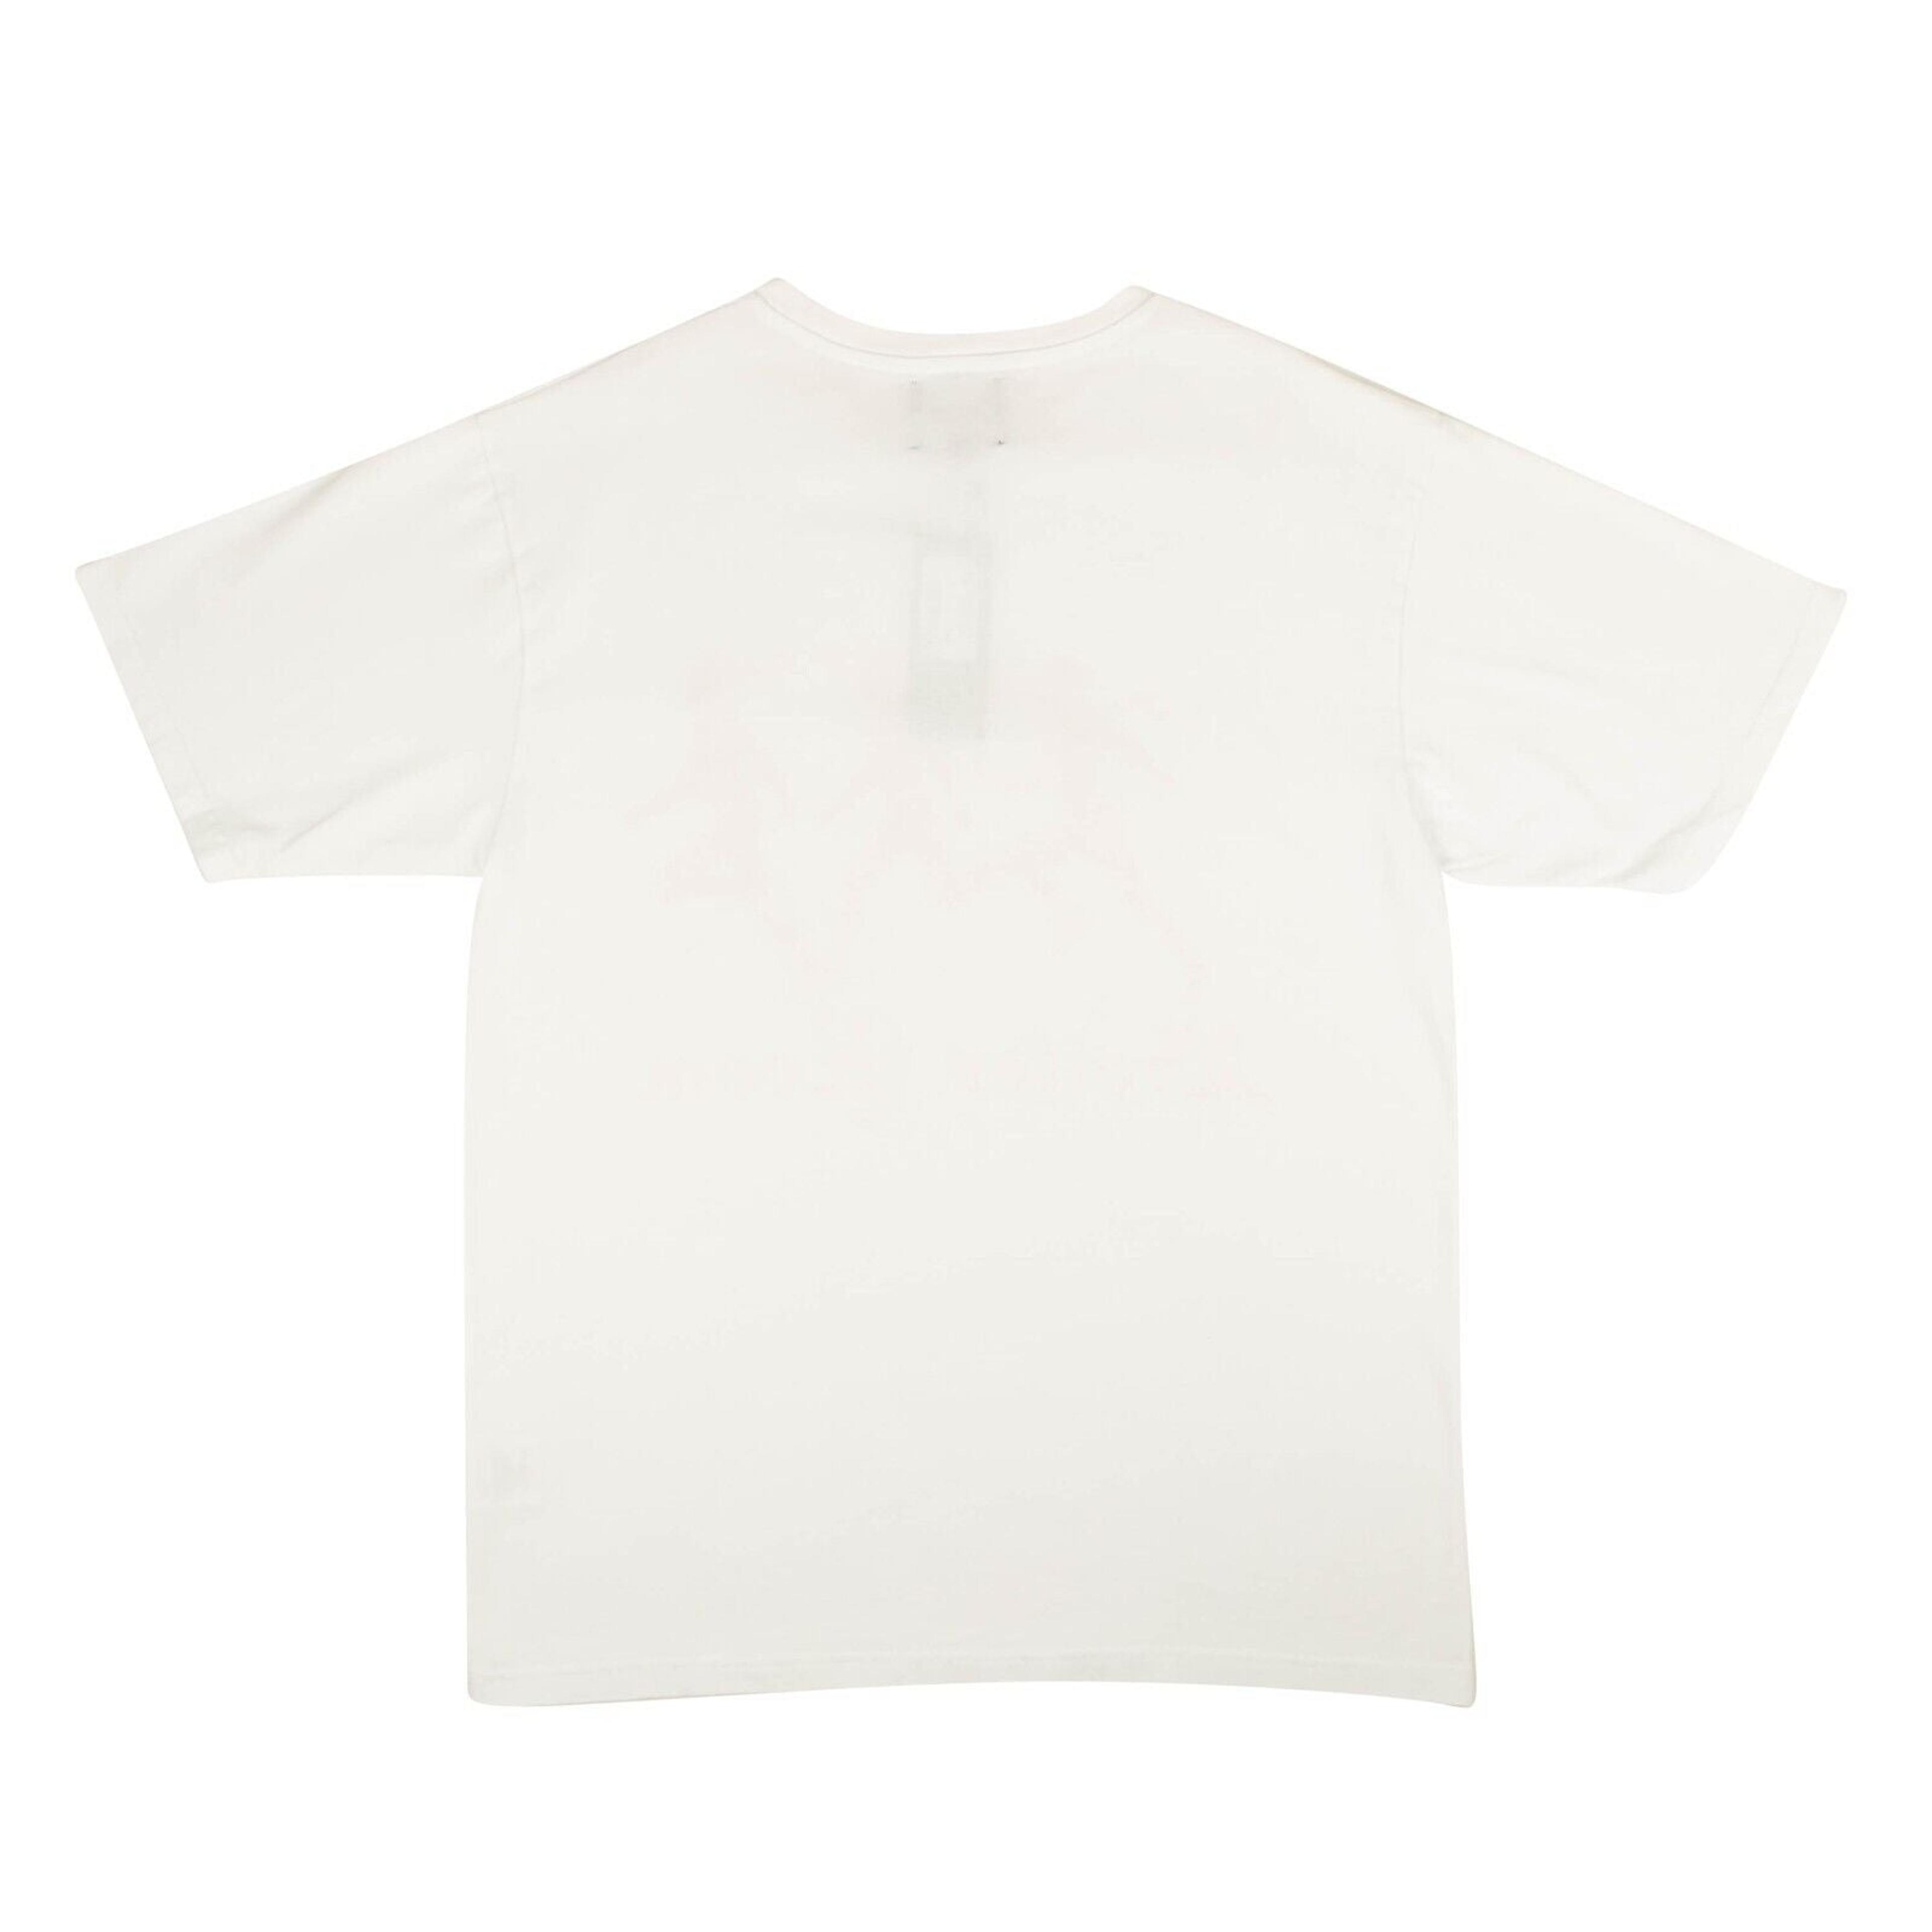 Alternate View 2 of White Rrunners Short Sleeve T-Shirt